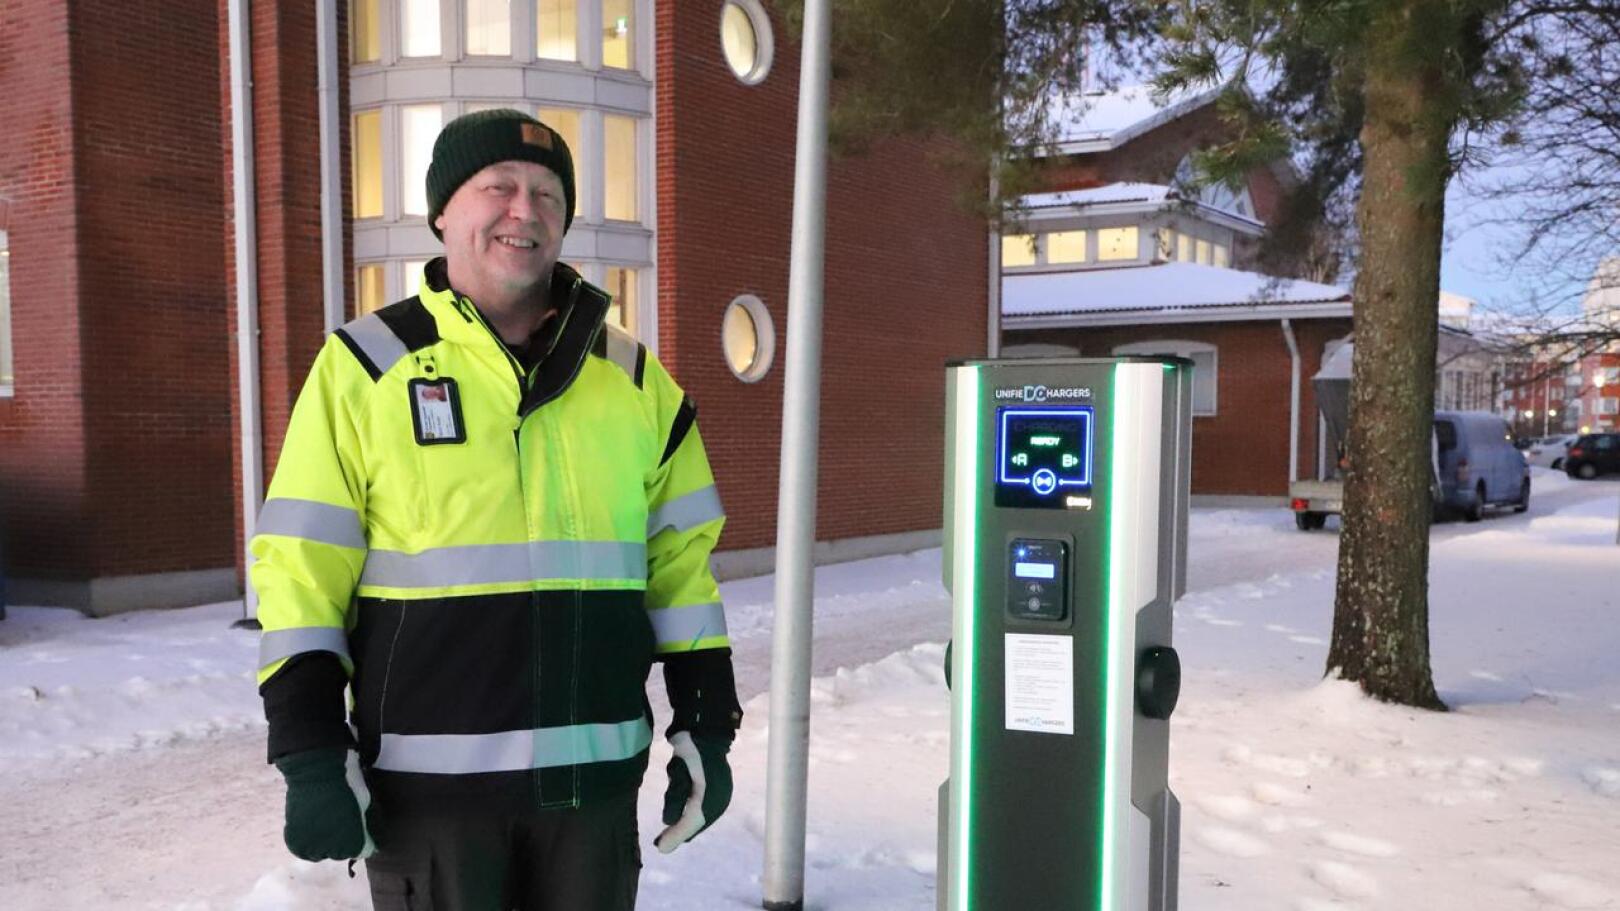 Nivalan kaupungin kiinteistöpäällikkö Tauno Korpi sanoo, että sähköautojen latauspisteiden rakentaminen on osa kaupungin palvelujen kehittämistä.